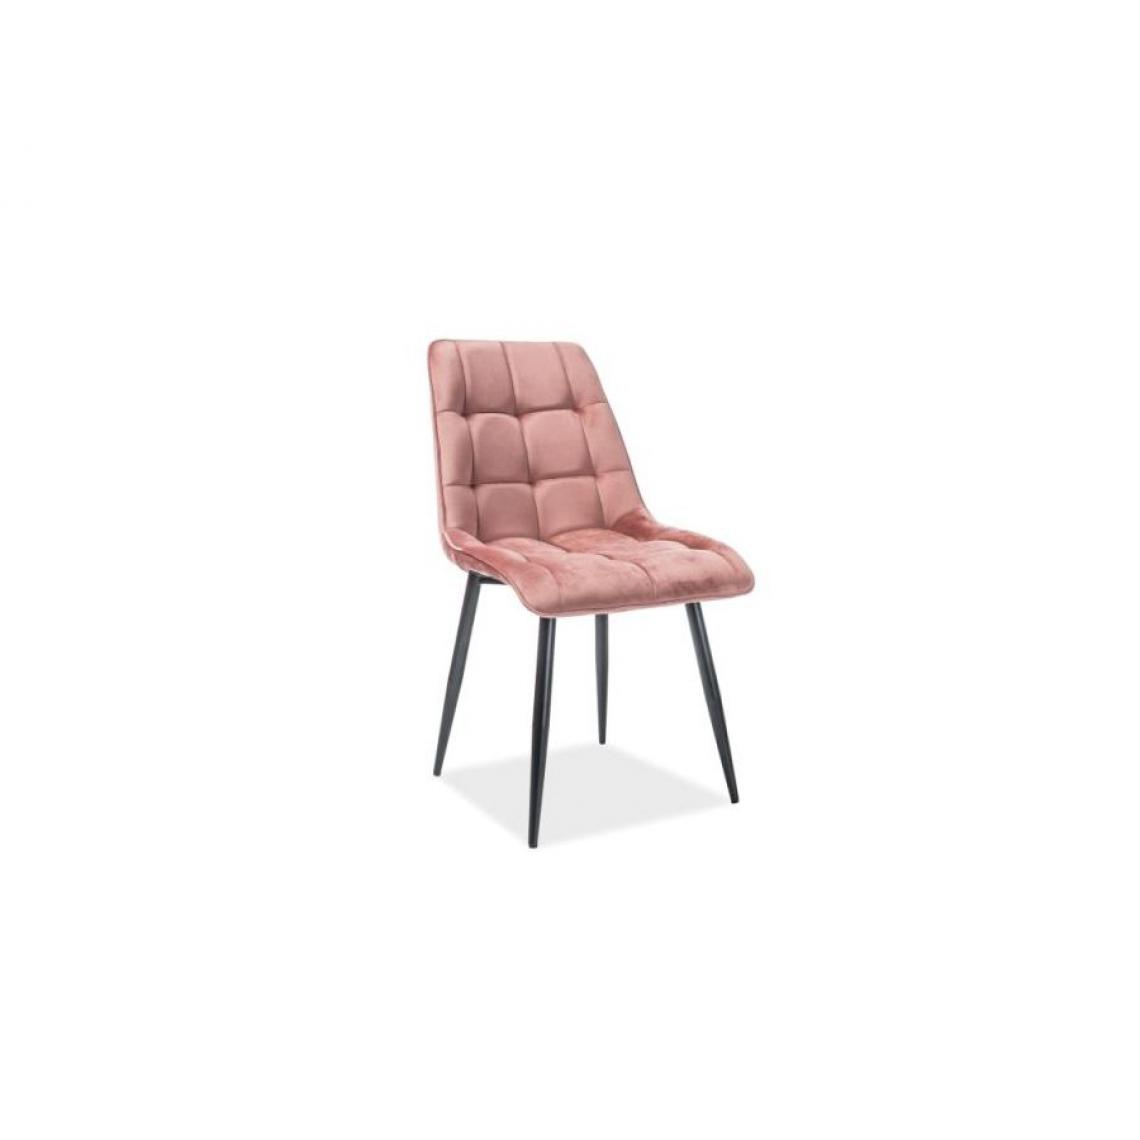 Hucoco - CONE | Chaise moderne matelassé salon bureau | Dimensions : 89x51x44 cm | Rembourrage en velours | Pieds en métal mats - Rose - Chaises